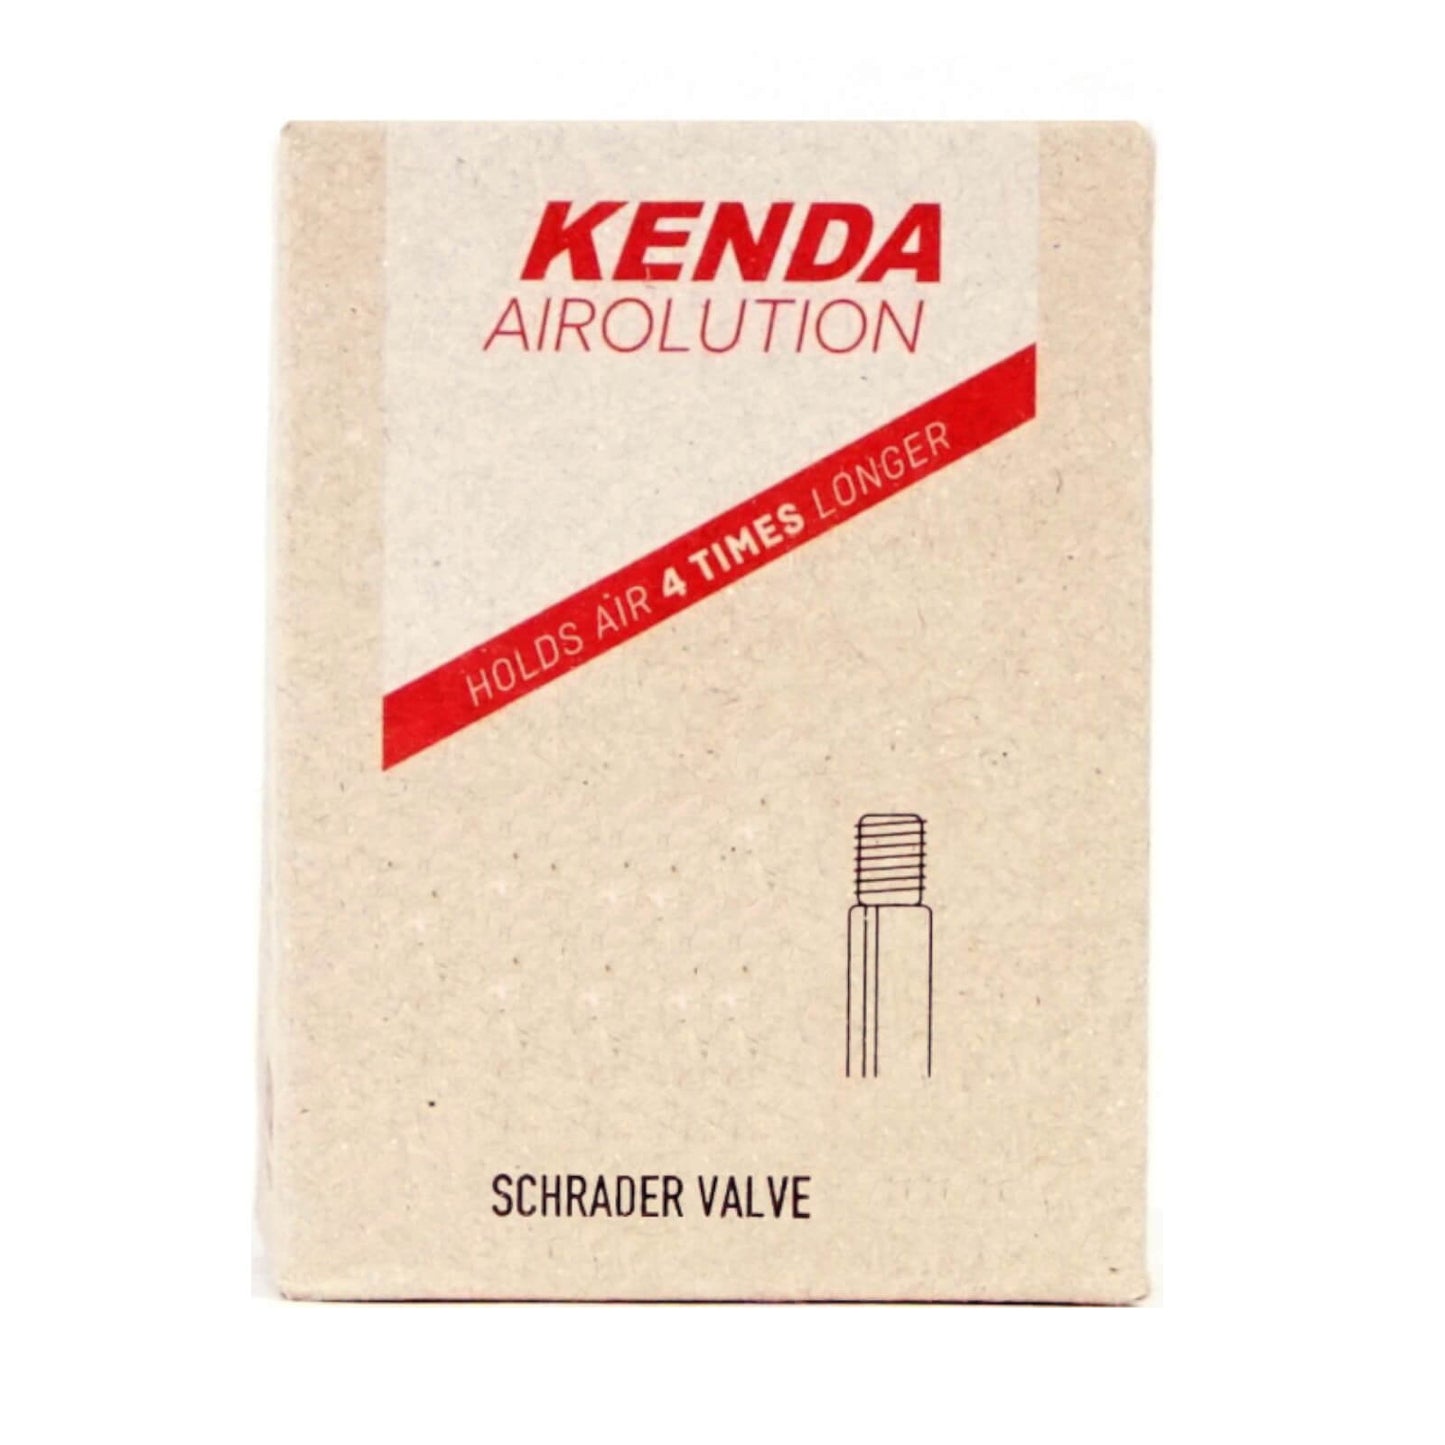 Kenda Airolution 700x28-35c 700c Schrader Valve Bike Inner Tube Single Tube